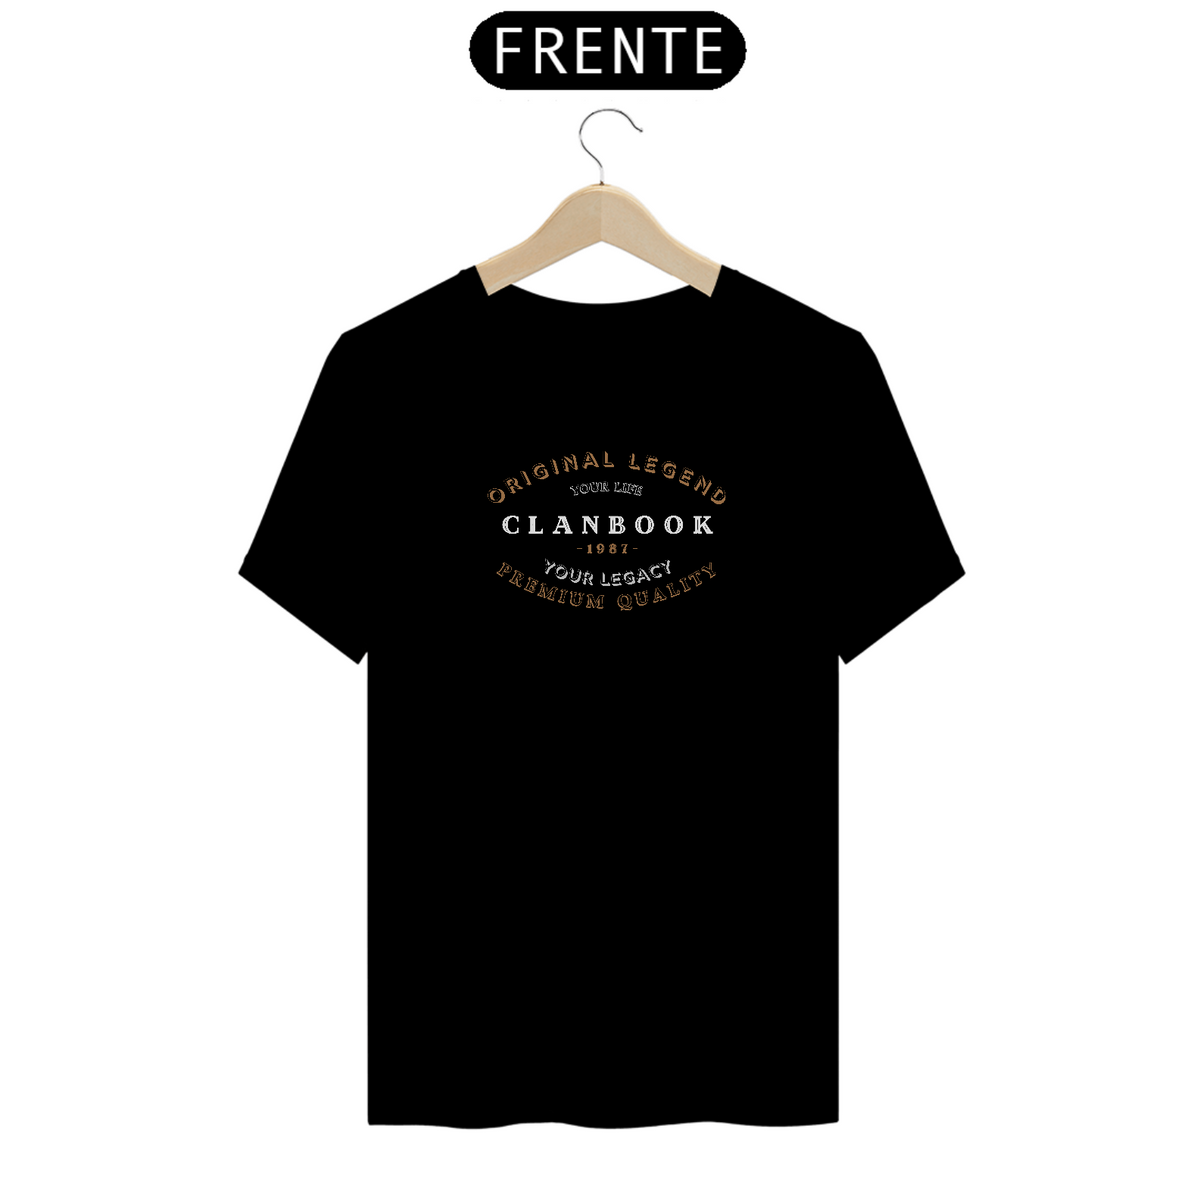 Nome do produto: T-Shirt Quality Original Legacy